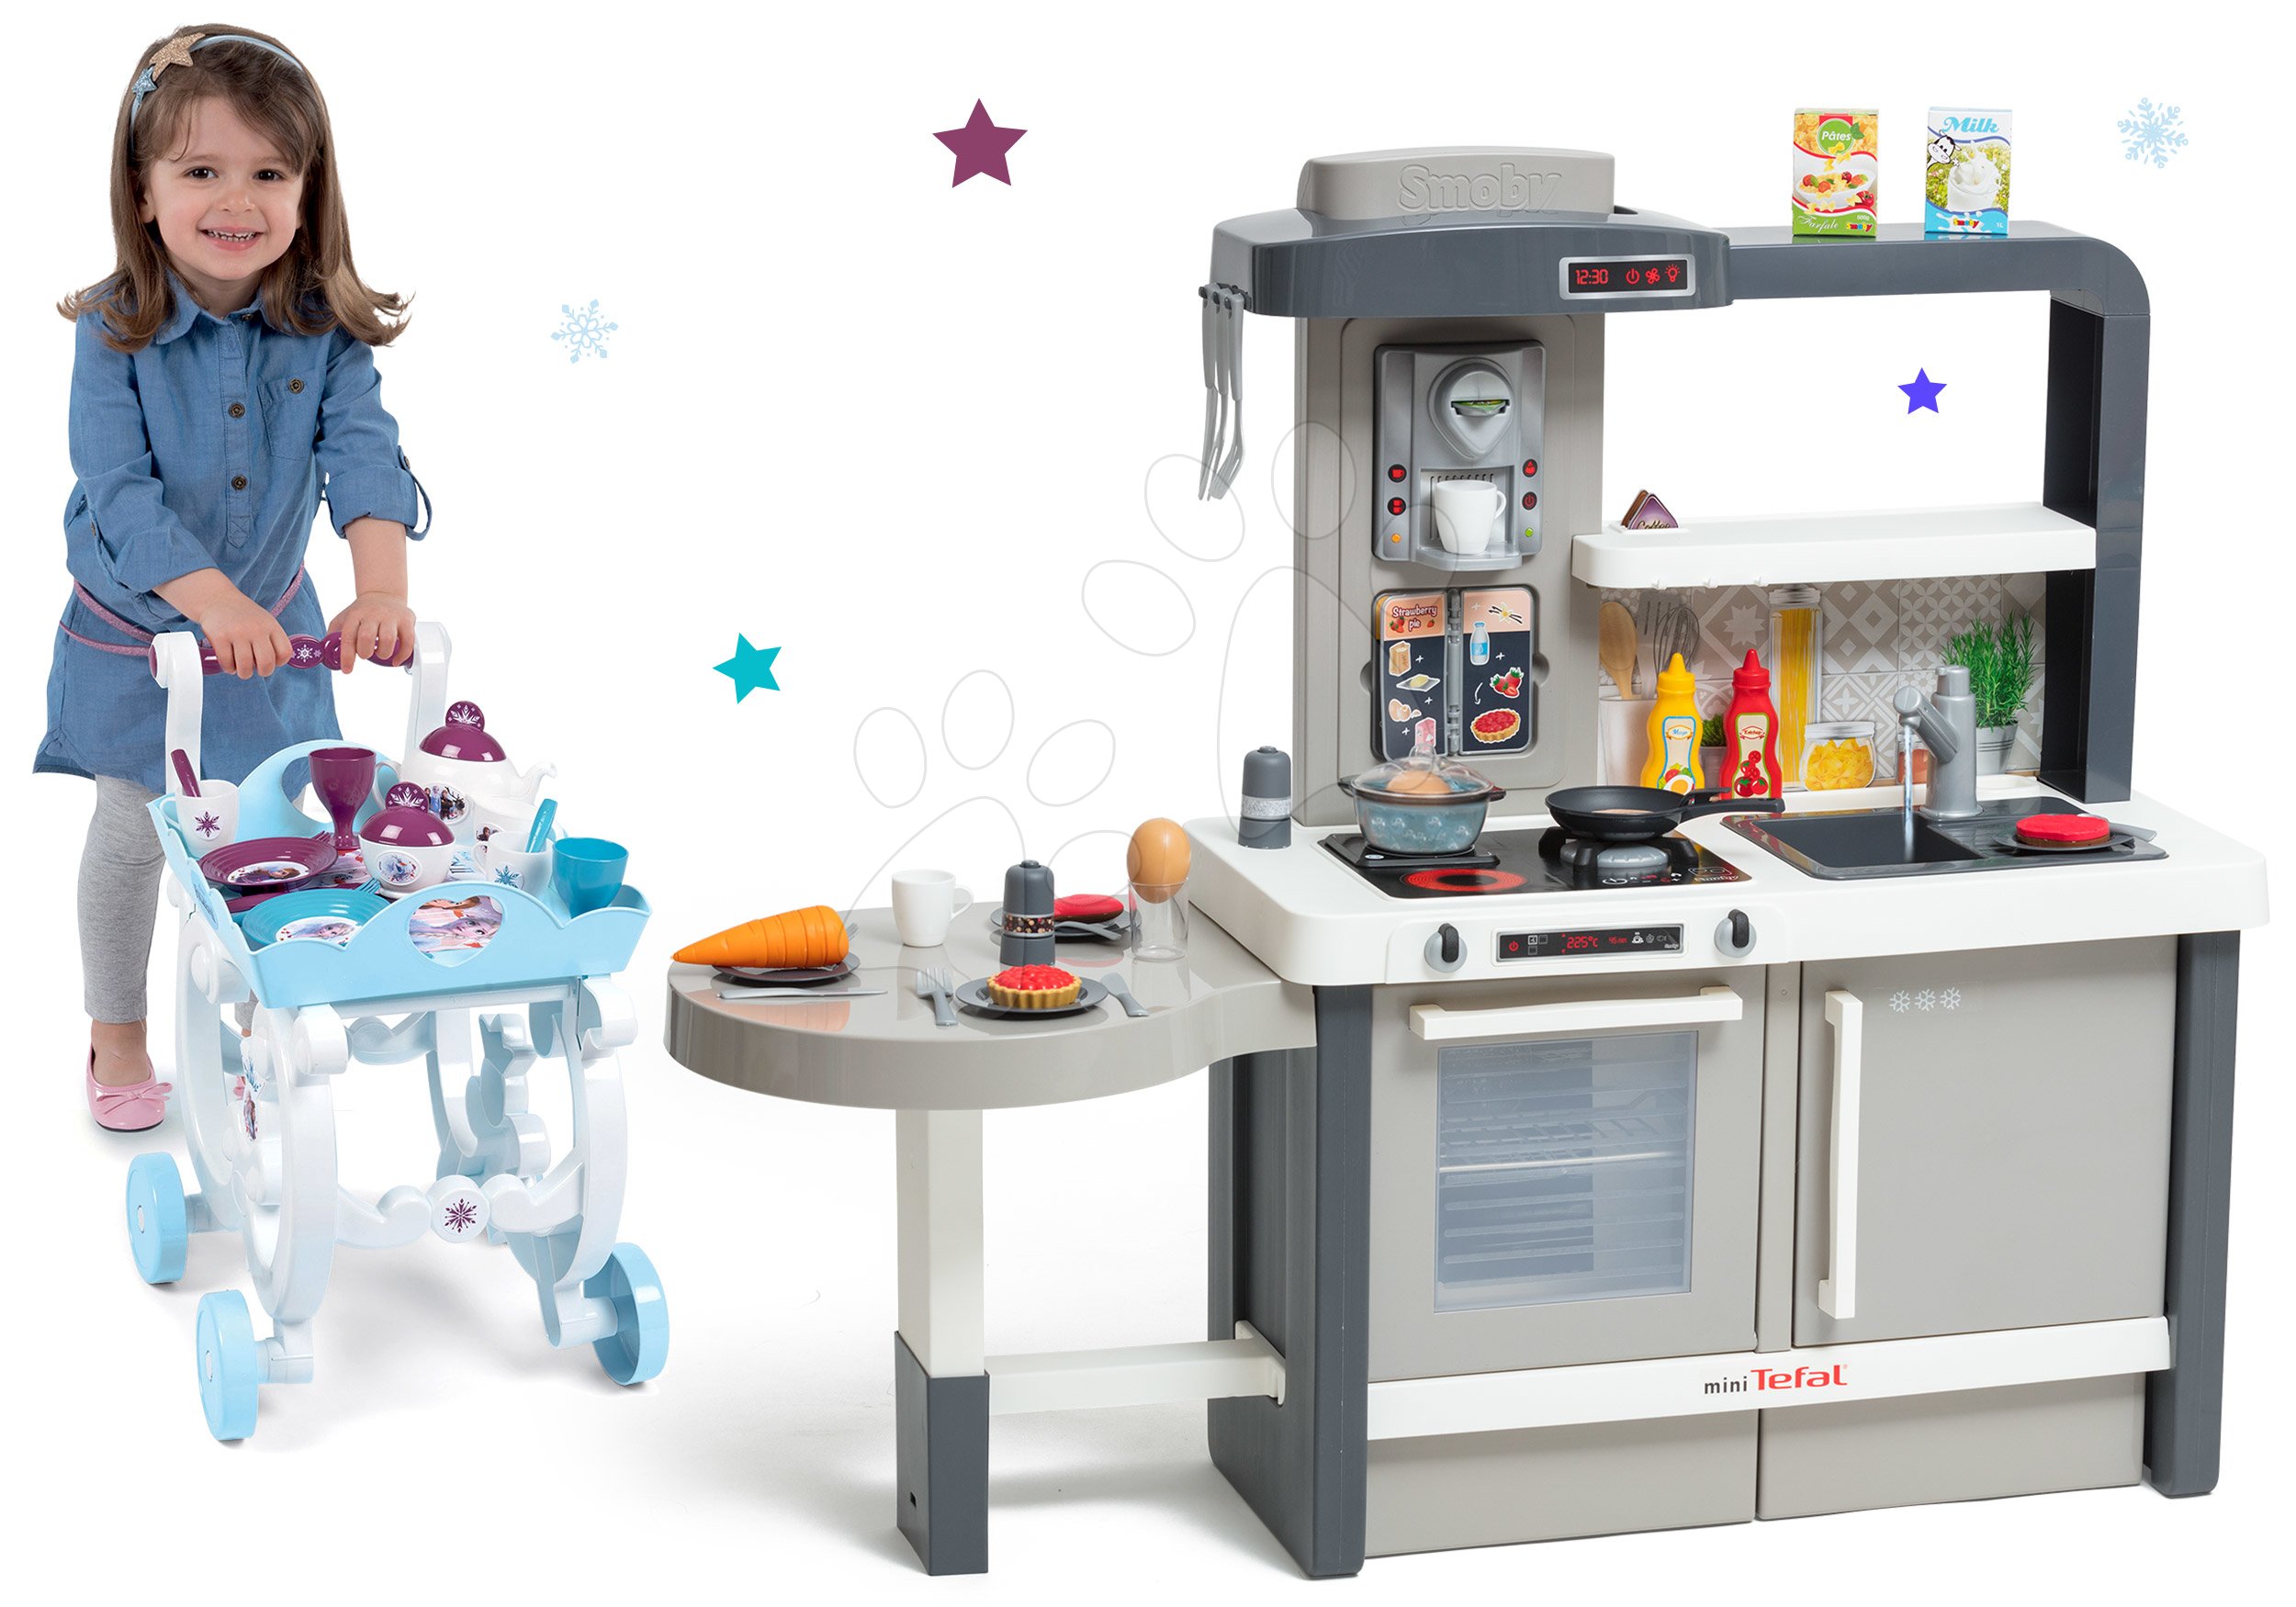 Kuchynky pre deti sety - Set kuchynka rastúca s tečúcou vodou Tefal Evolutive Smoby a servírovací vozík Frozen XL Tea Trolley